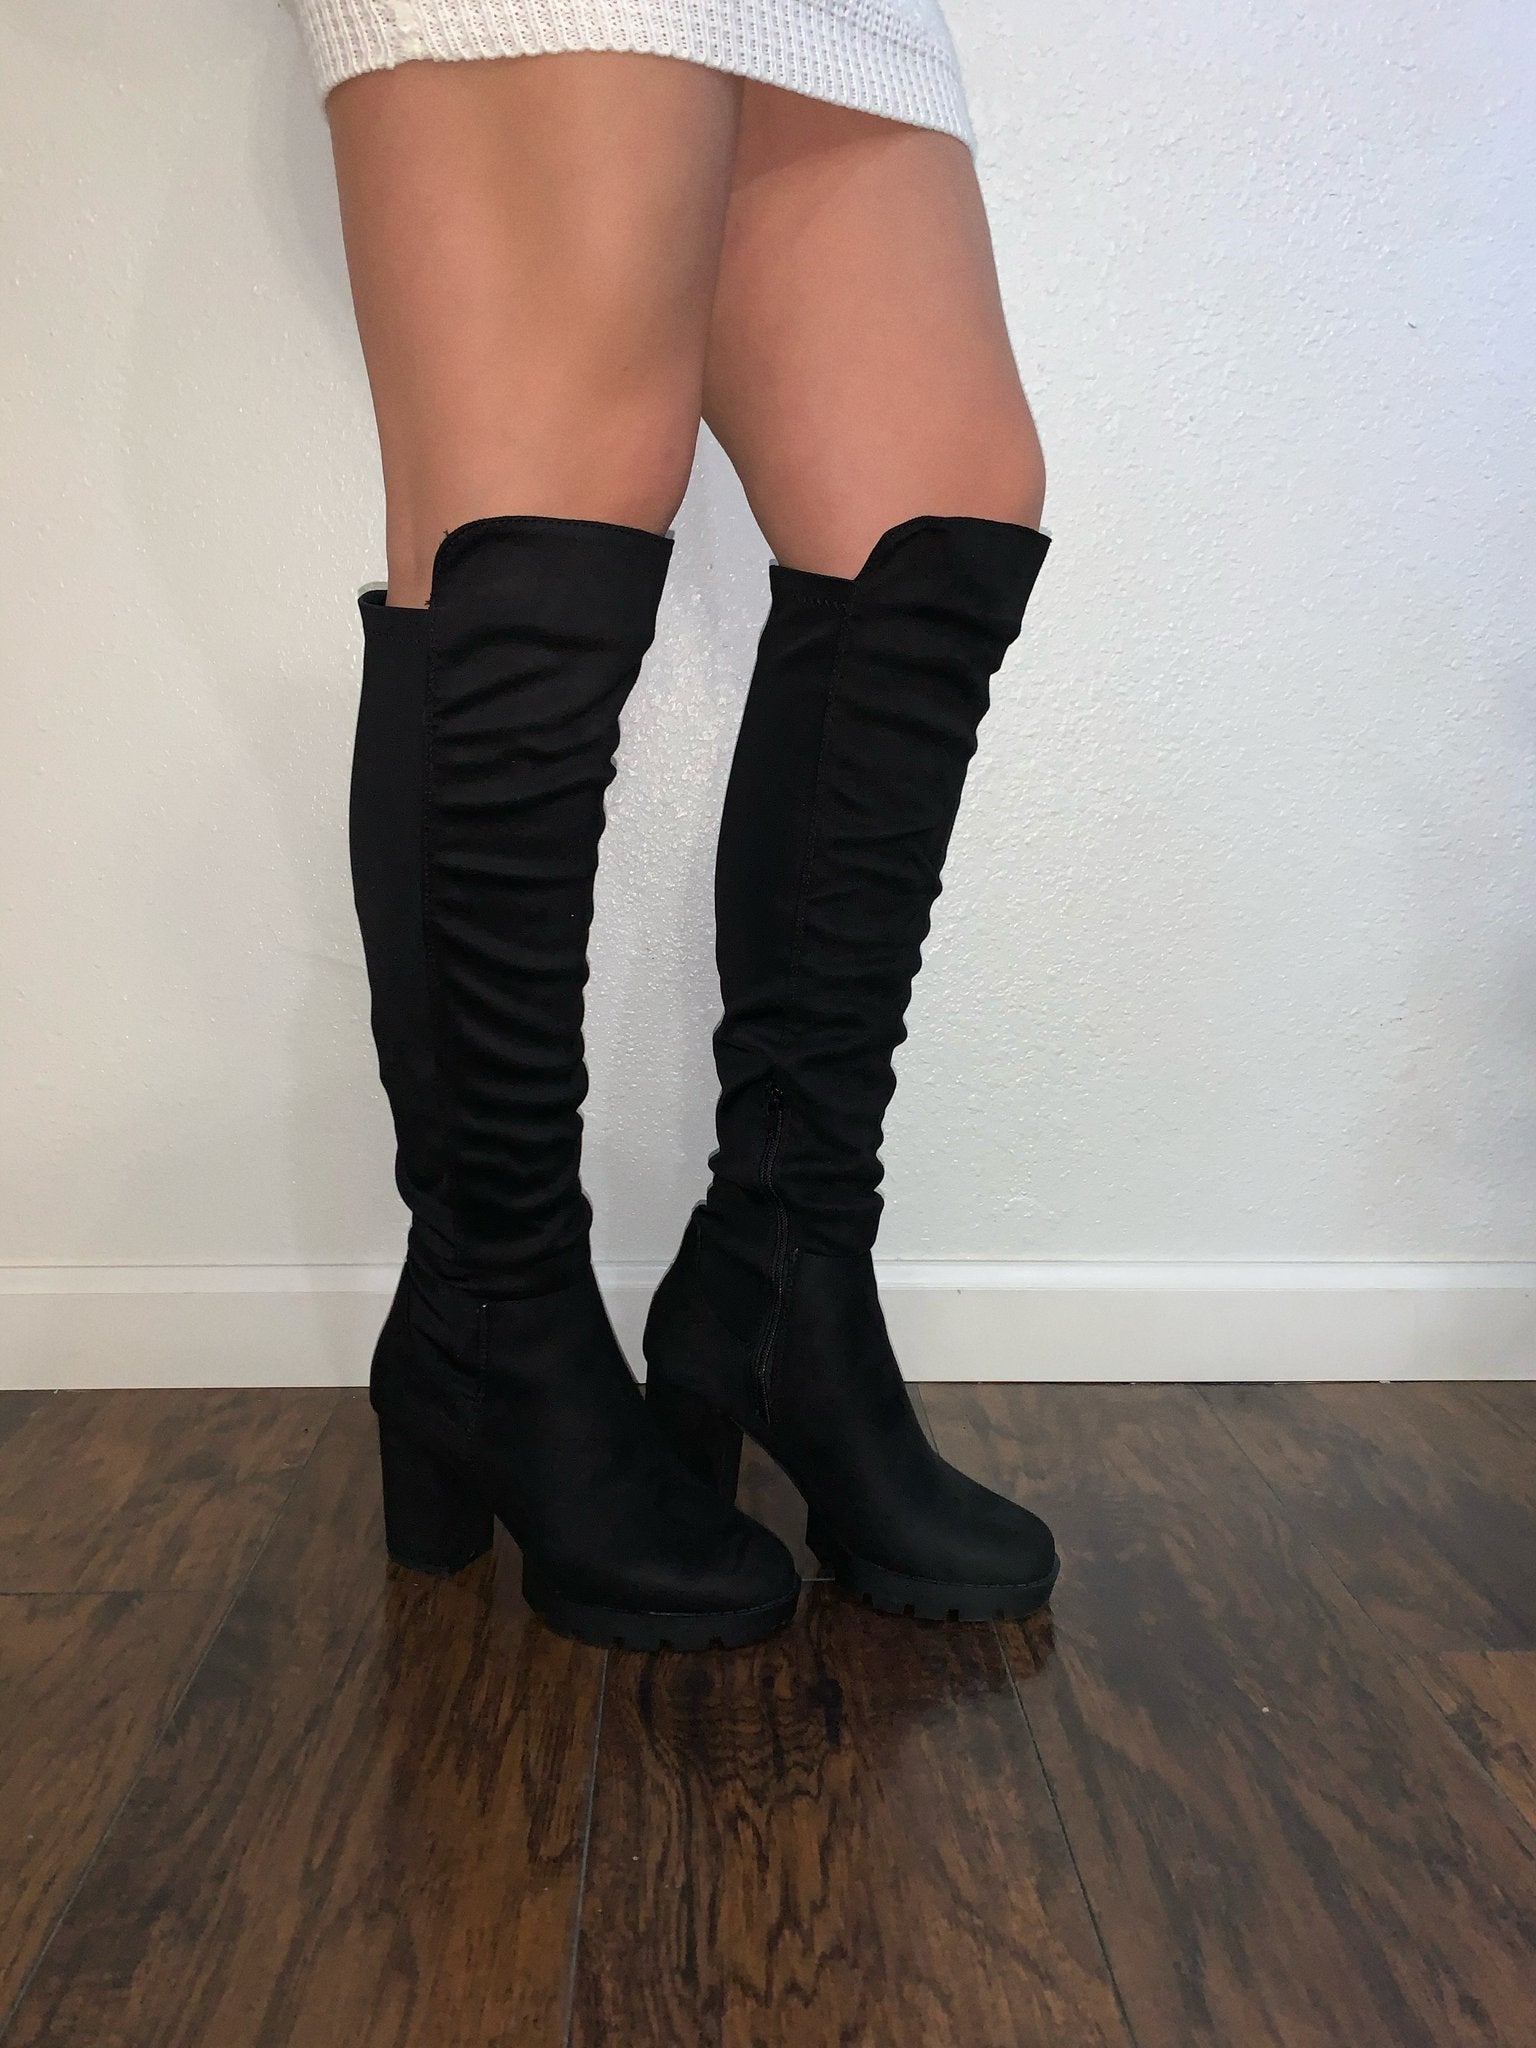 Boots / Heels